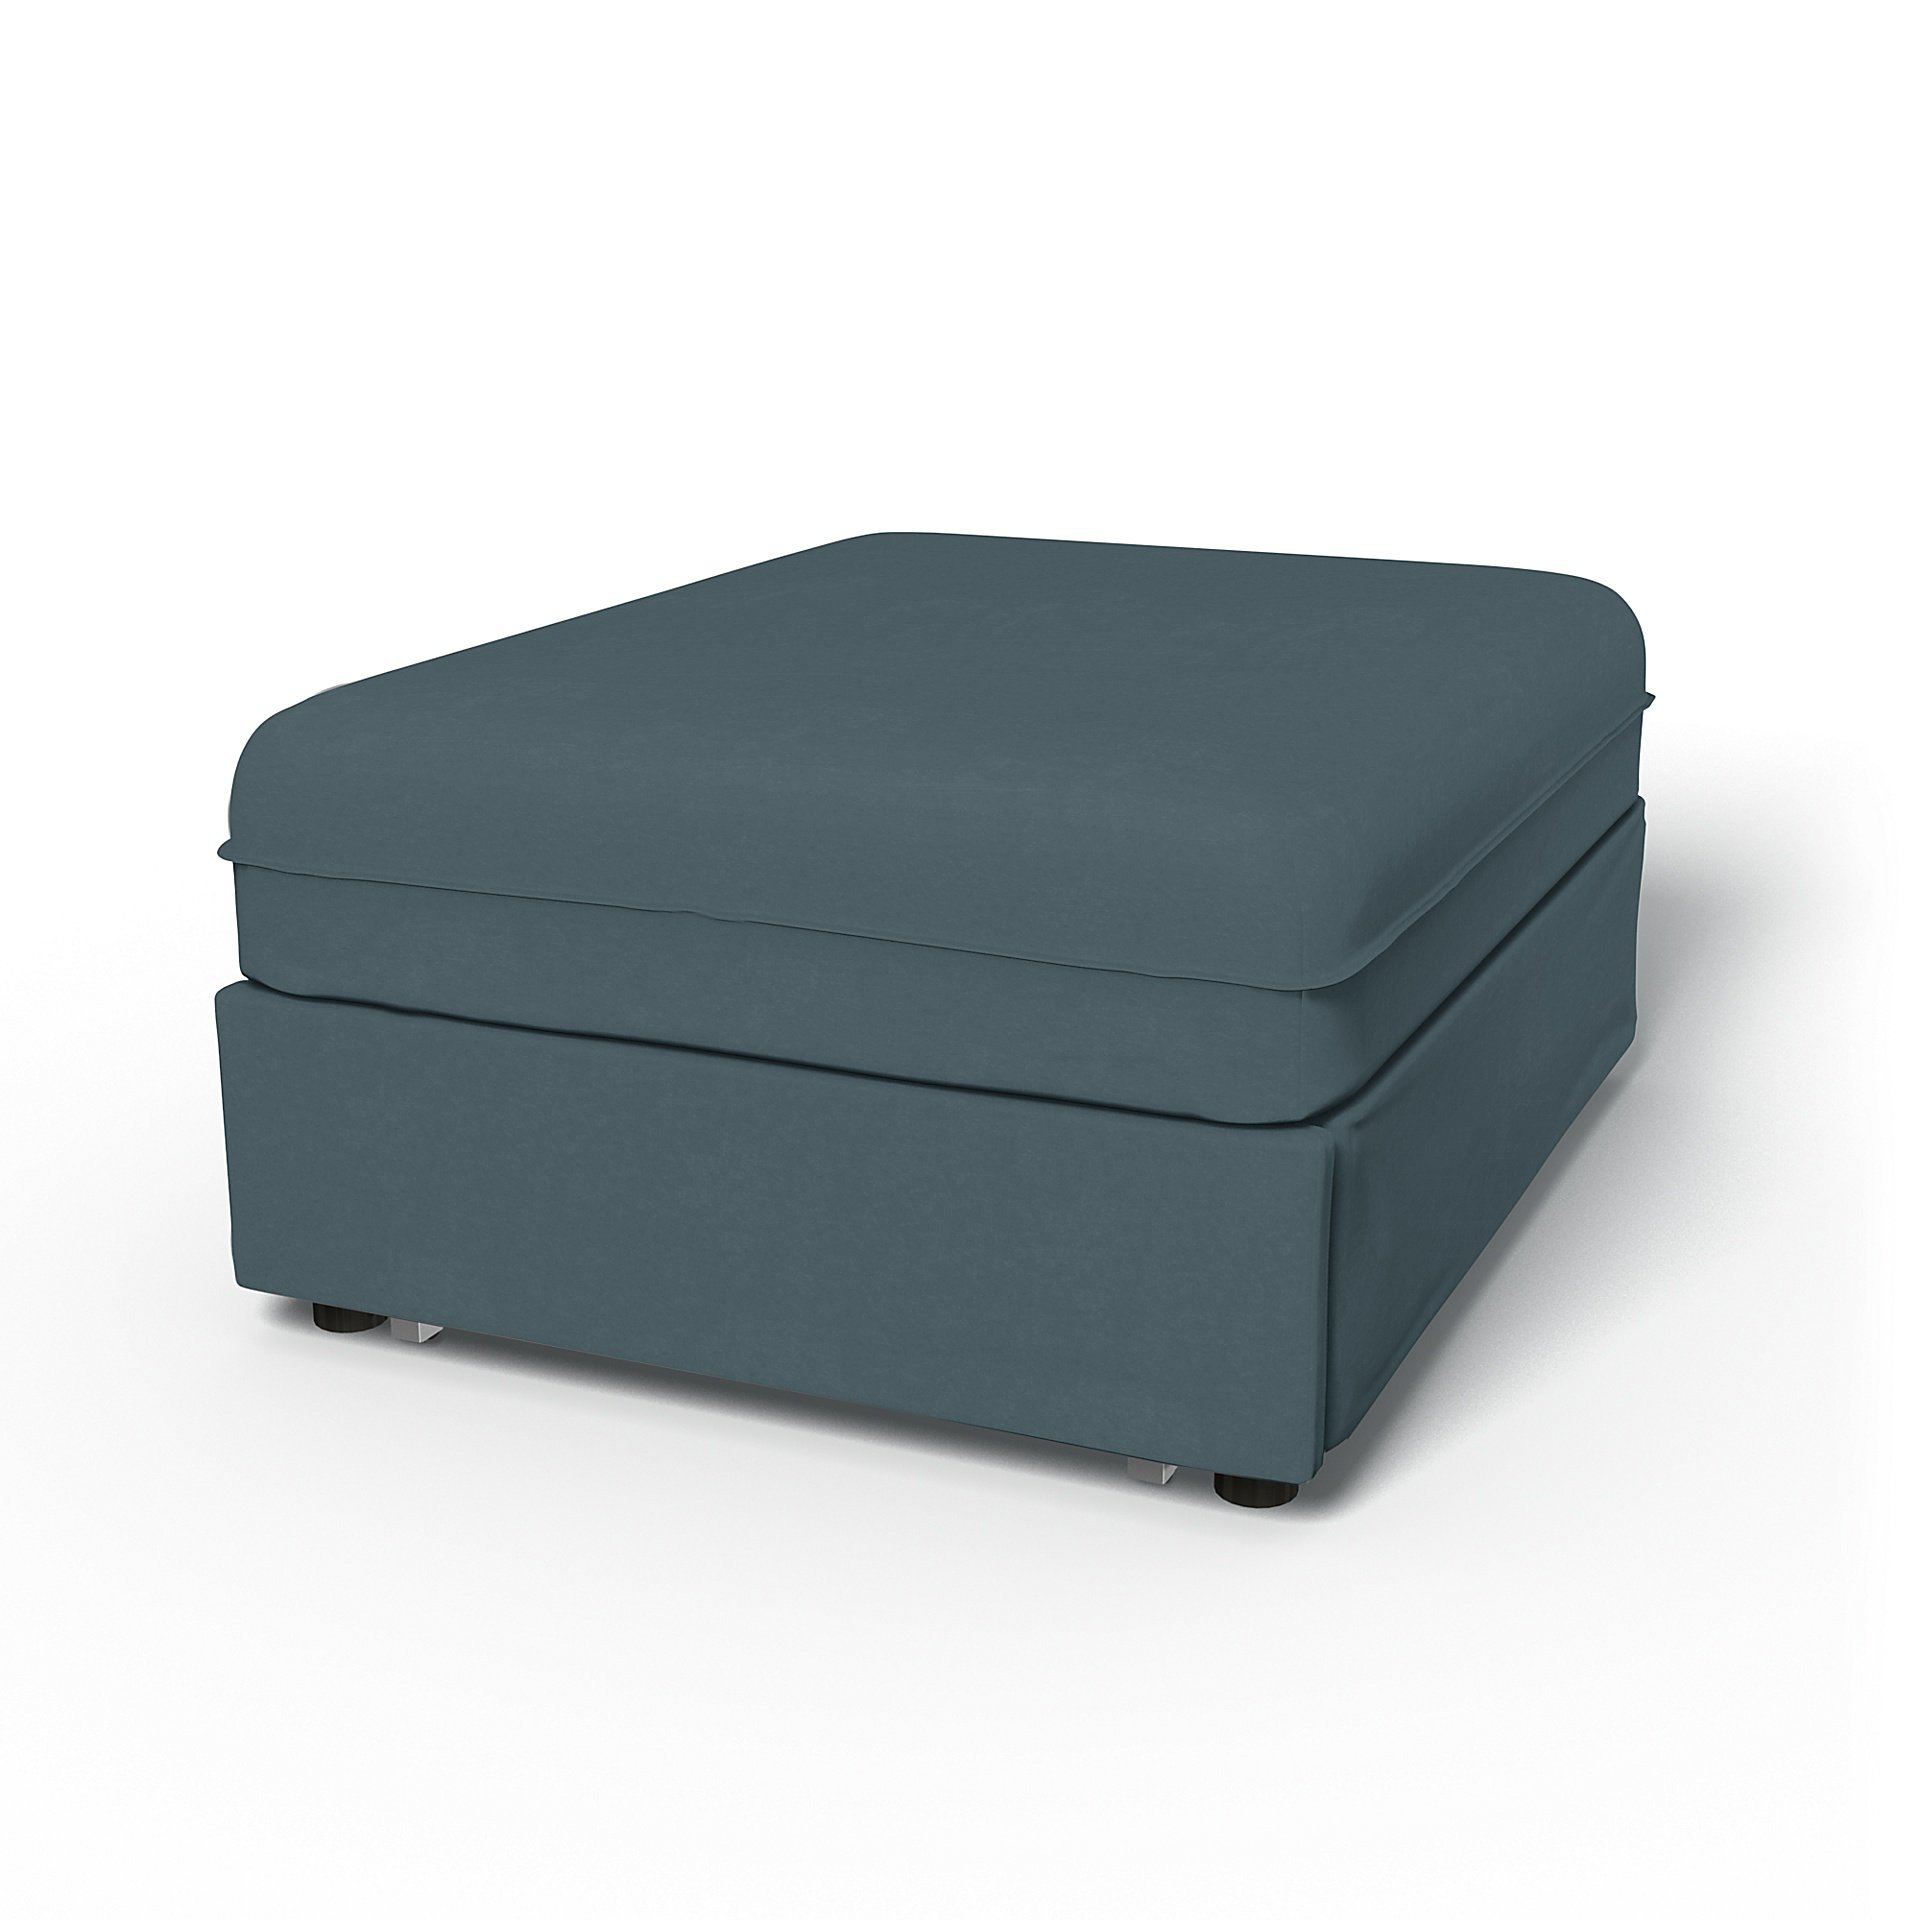 IKEA - Vallentuna Seat Module with Sofa Bed Cover 80x100cm 32x39in, Duck Egg, Velvet - Bemz